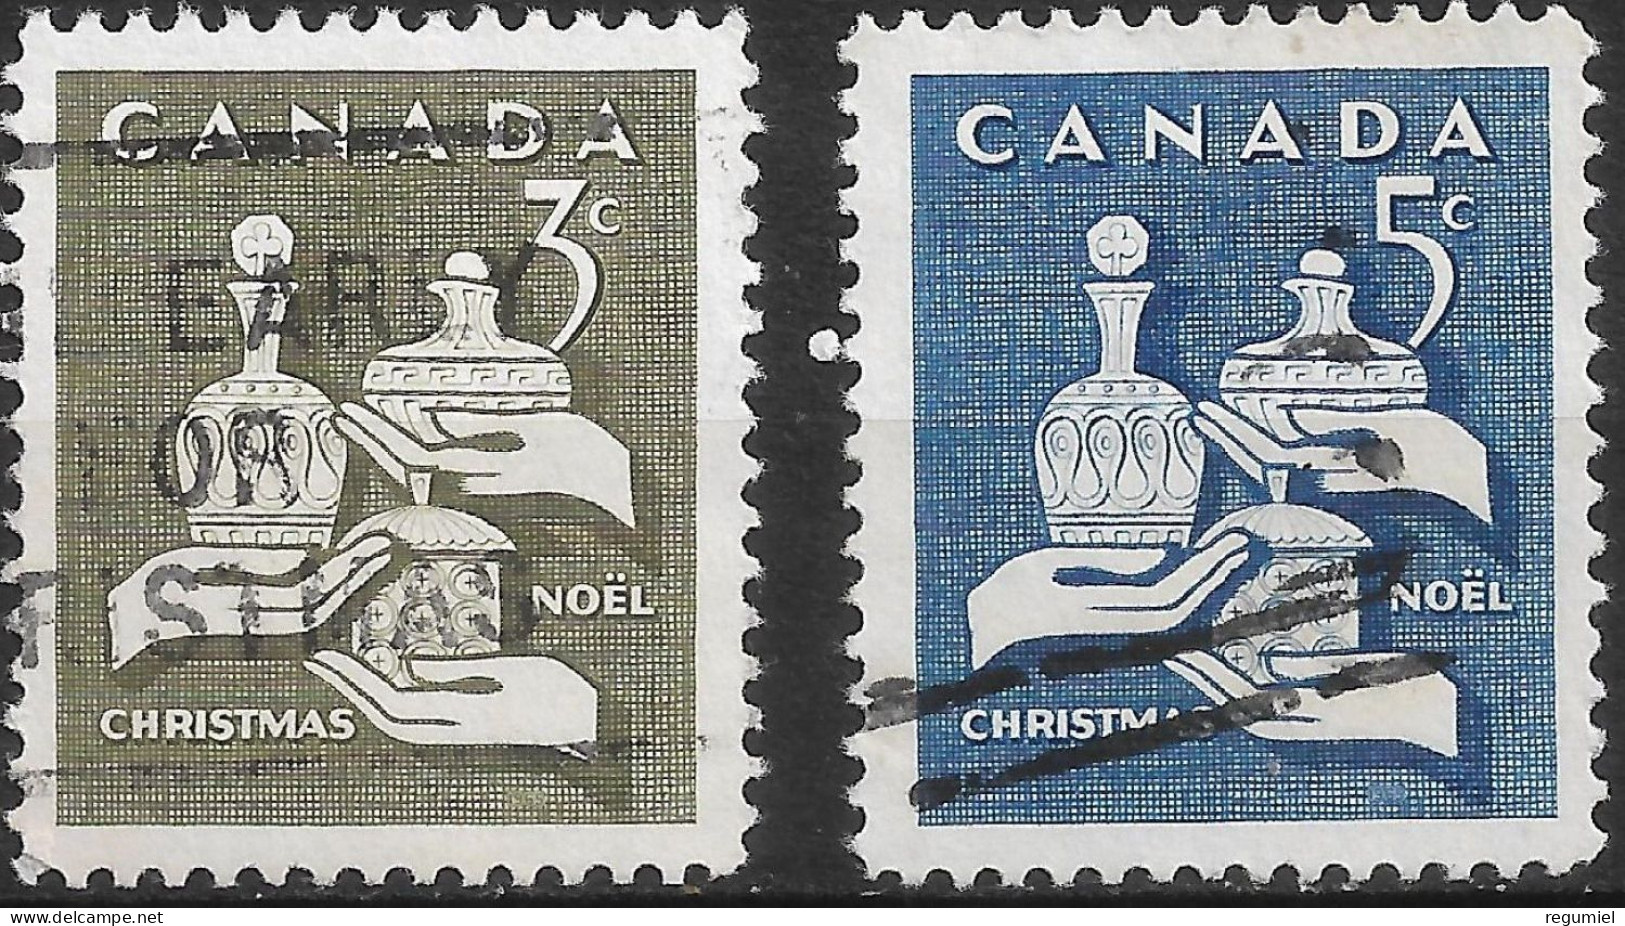 Canada U  367/368 (o) Usado. 1965 - Oblitérés